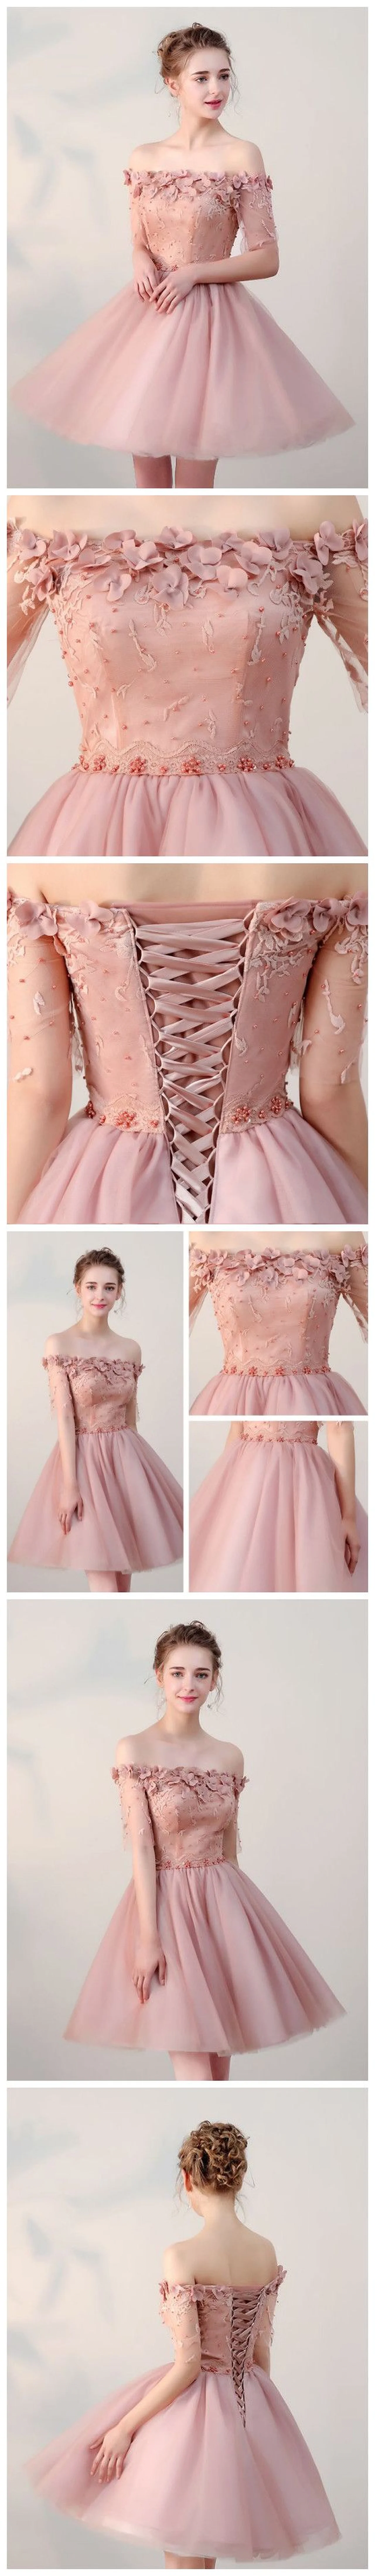 Różowa, balowa sukienka